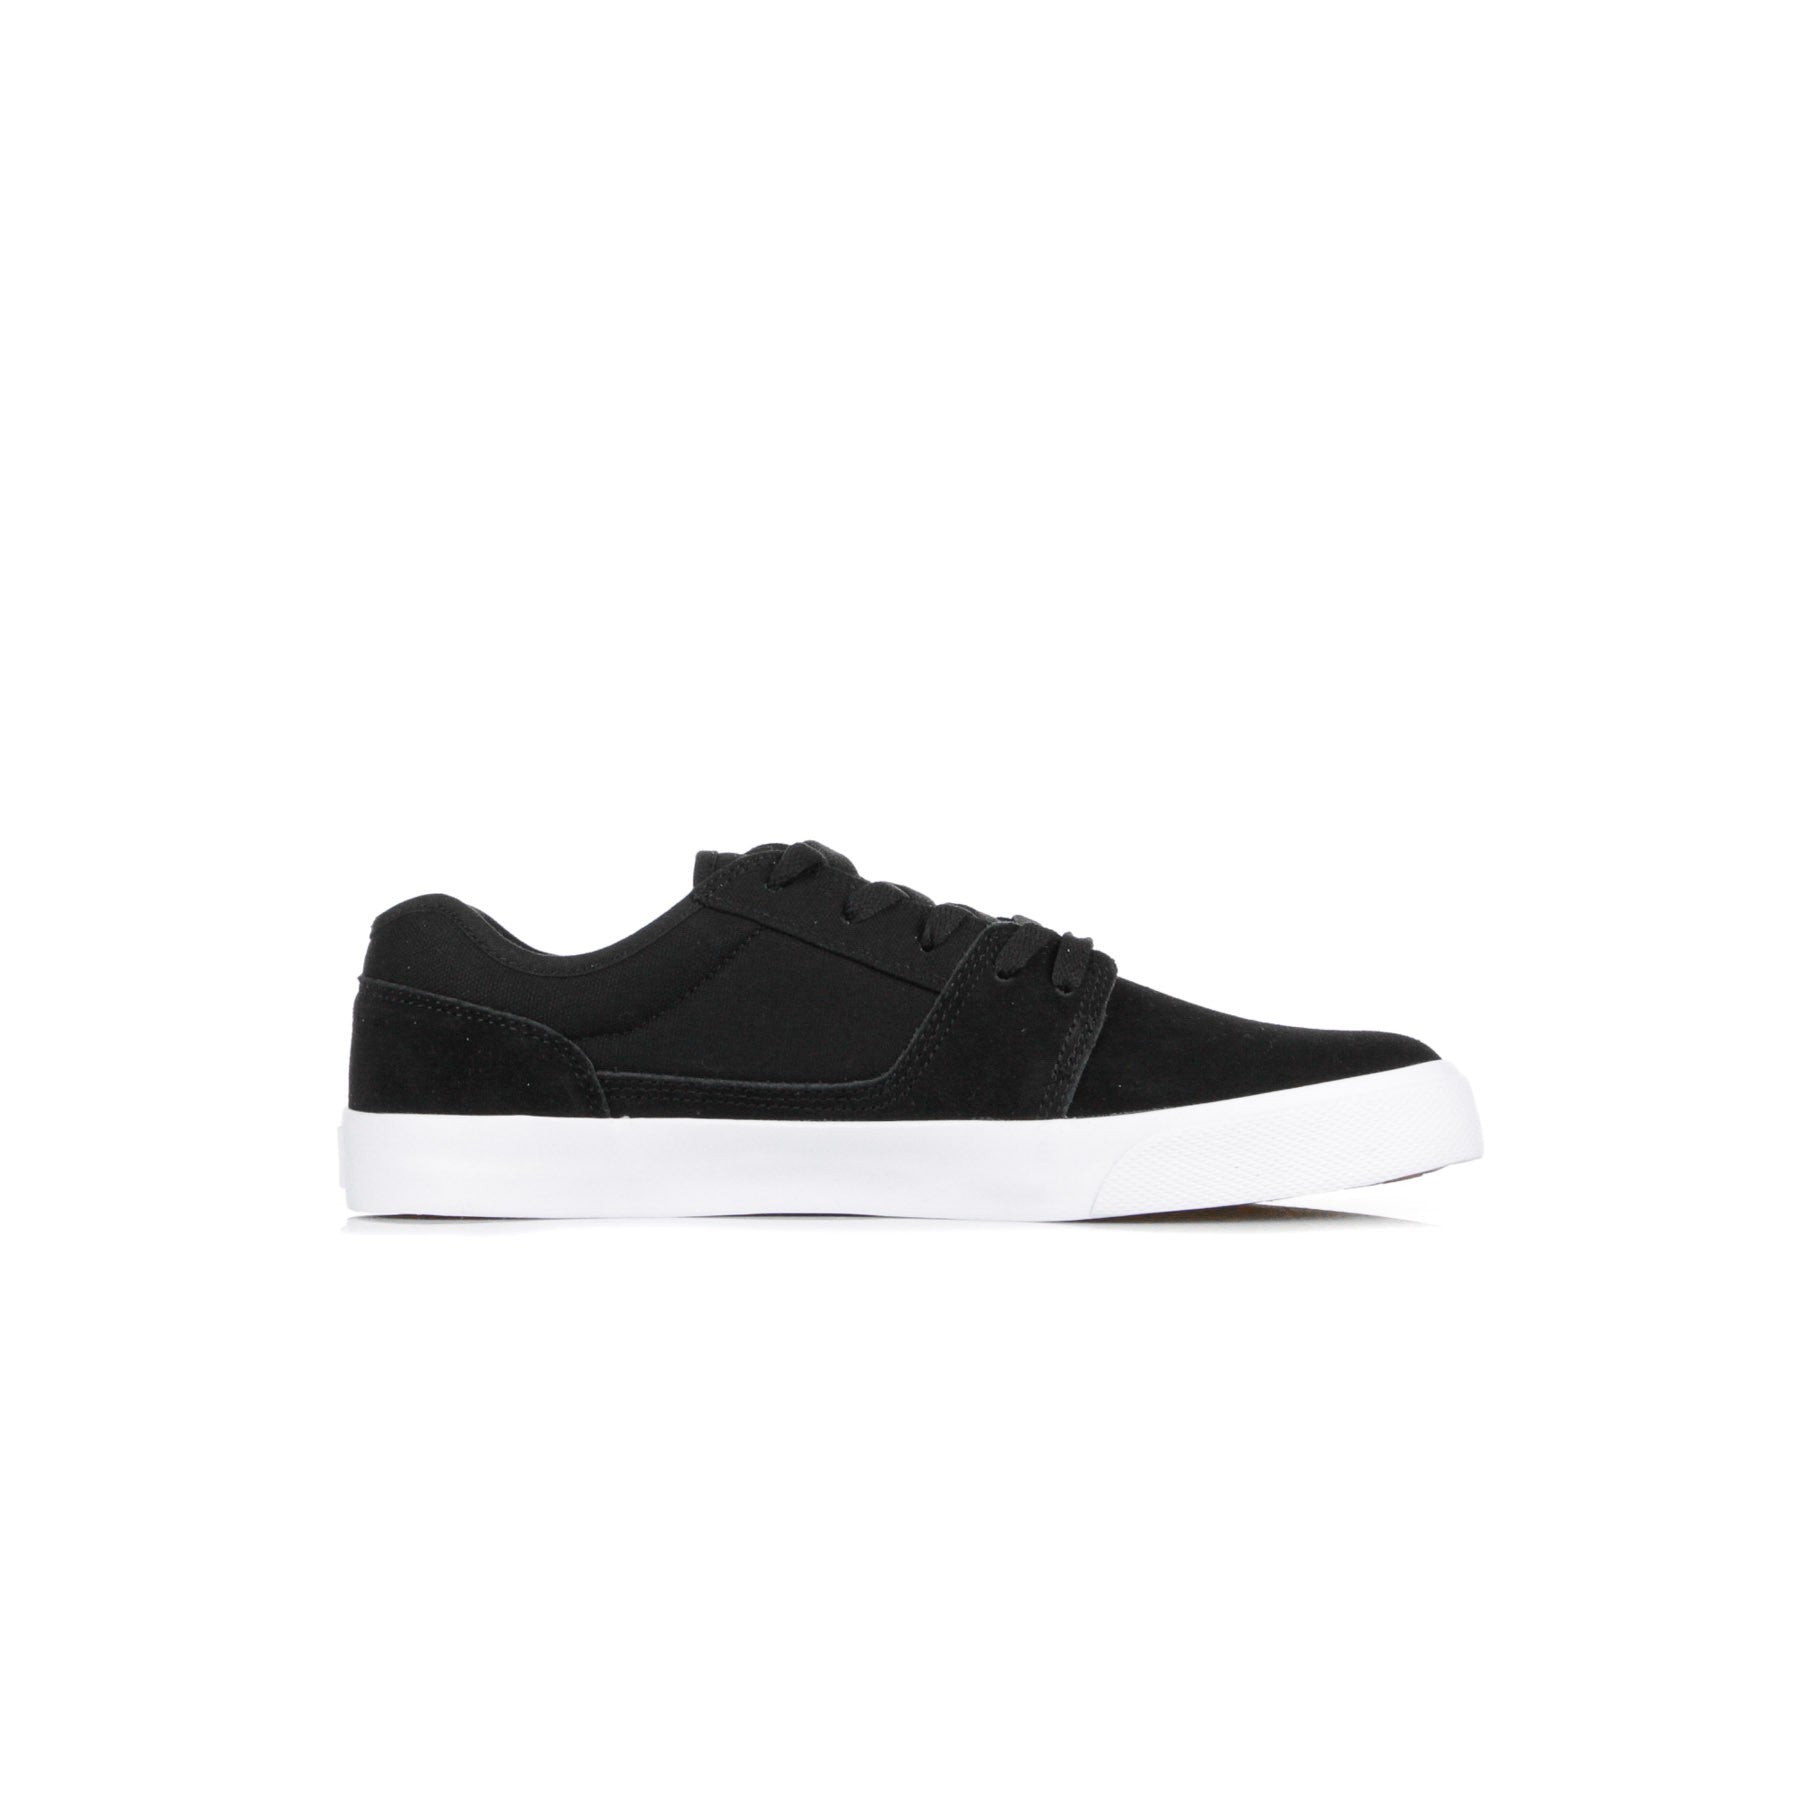 Tonik Men's Skate Shoes Black/white/black